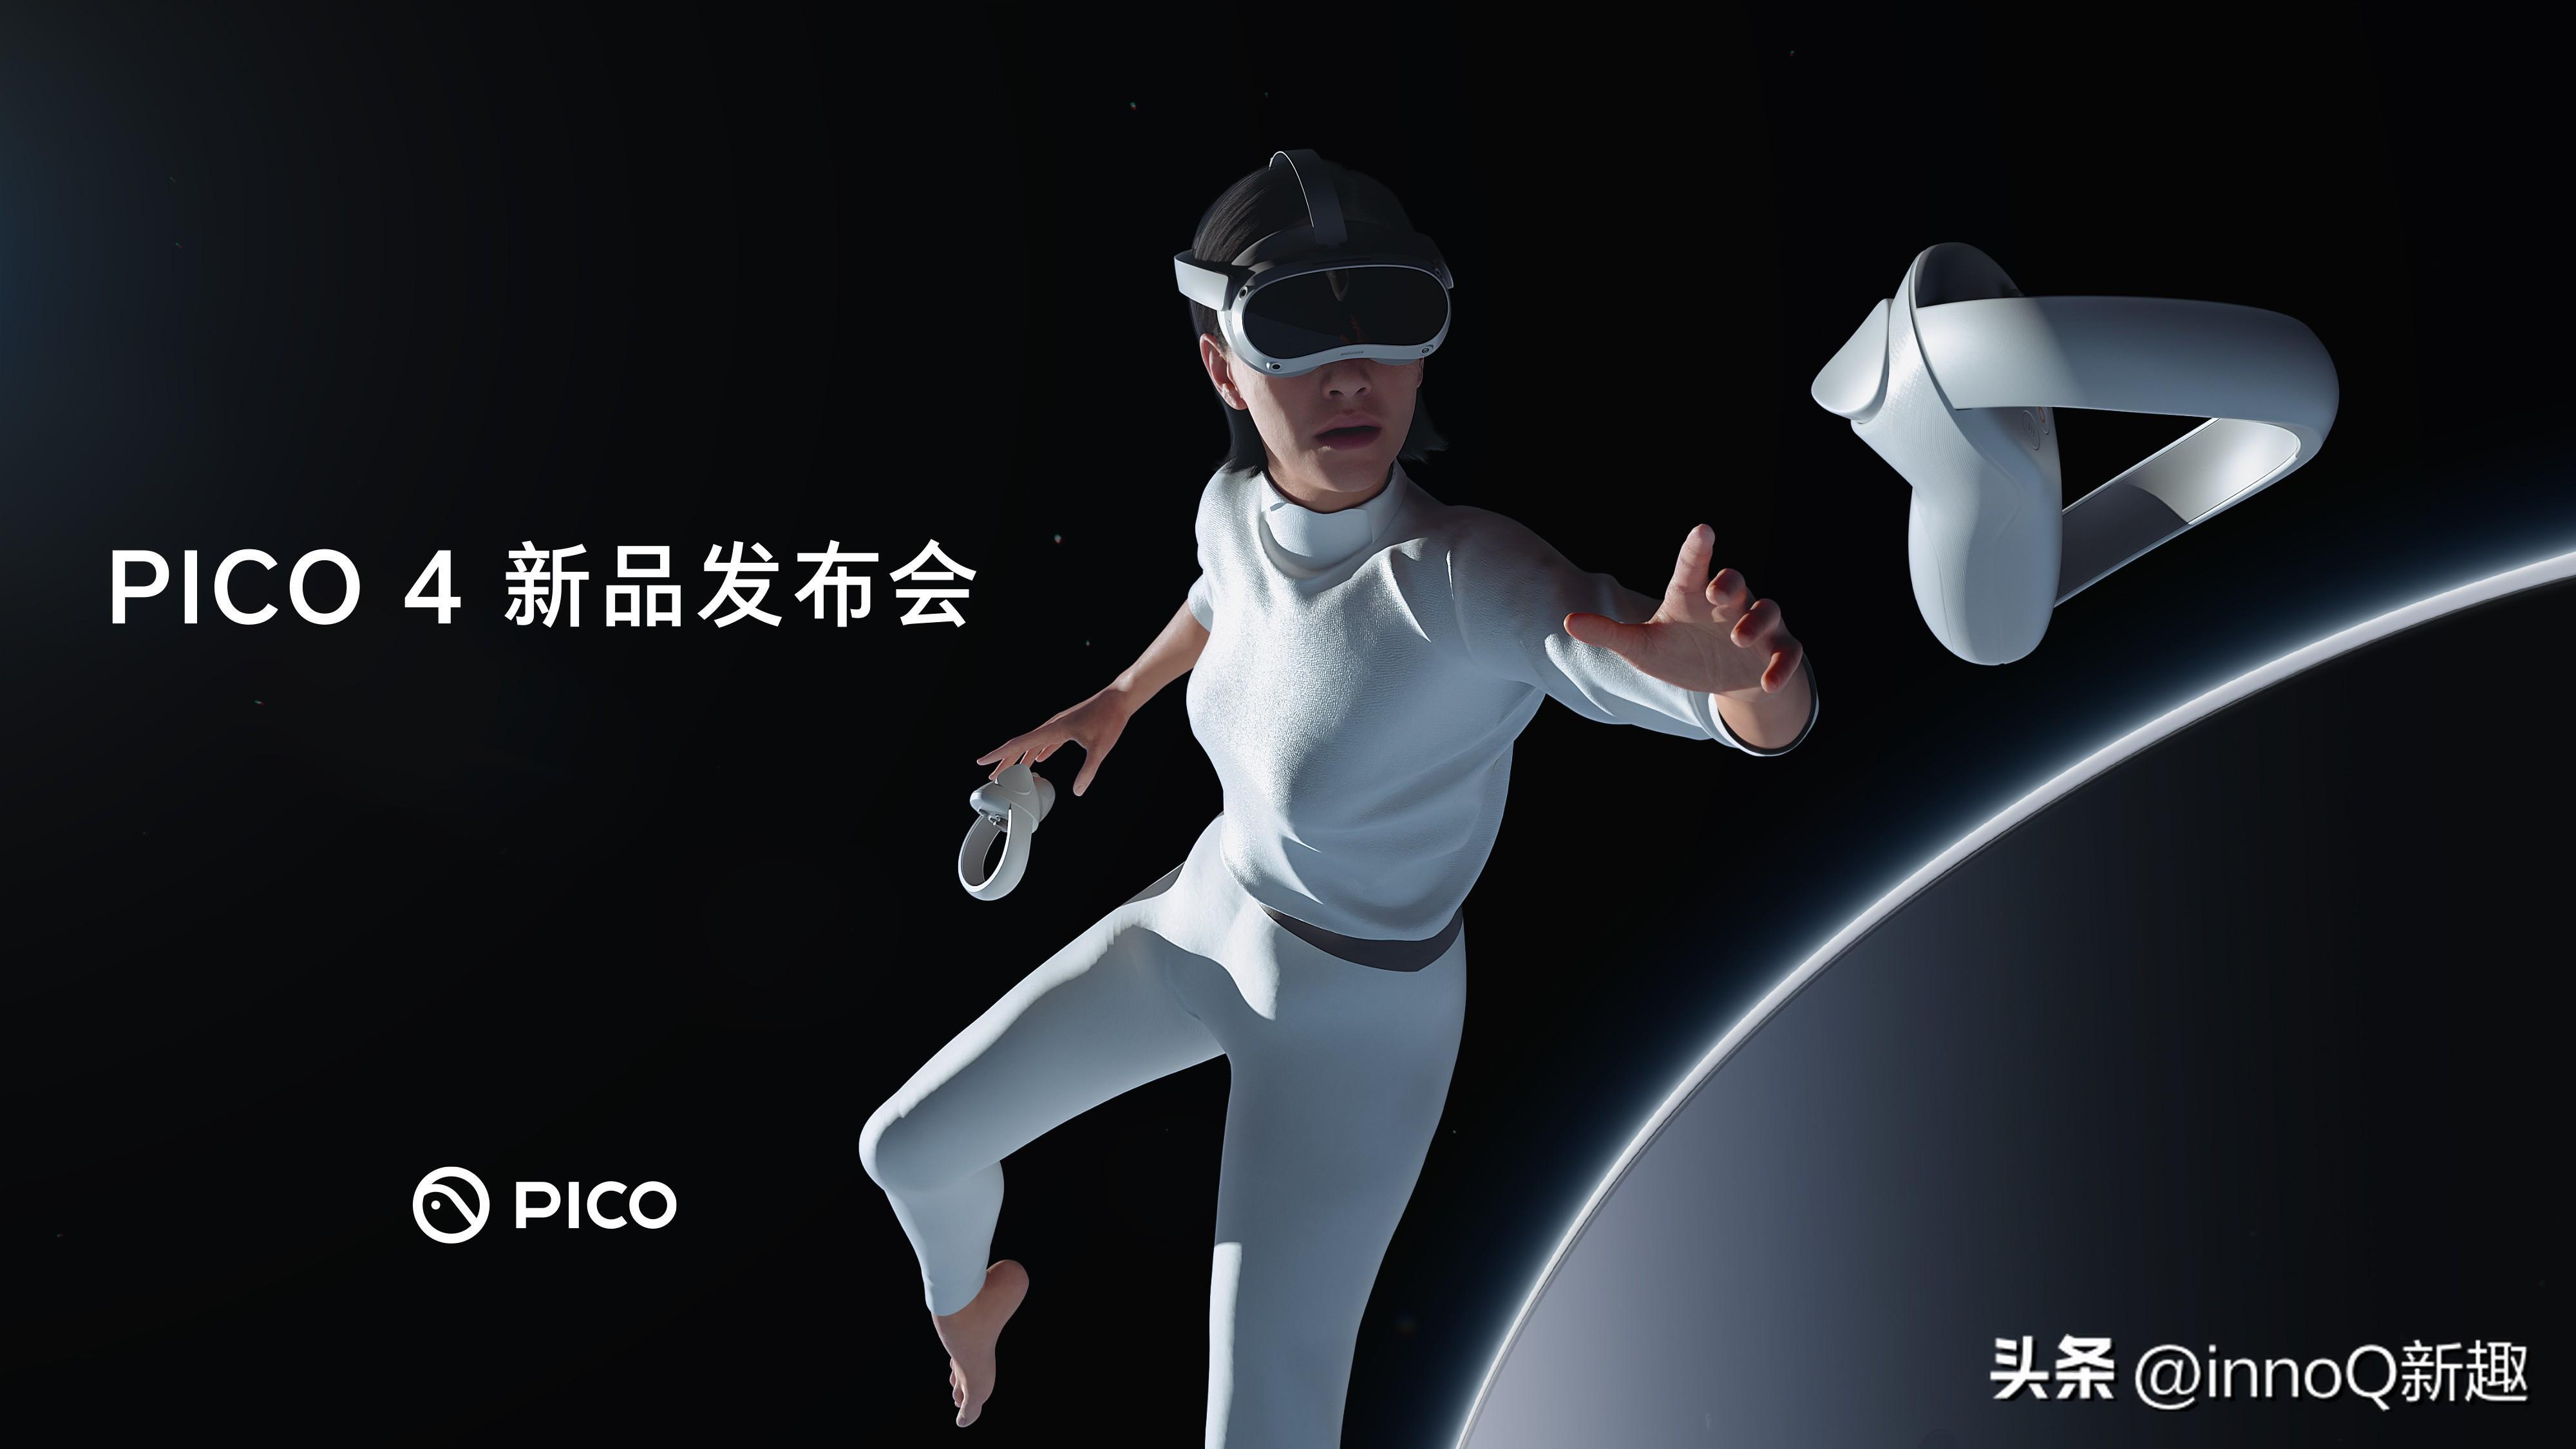 刘慈欣官宣将推出VR版三体,刘慈欣三体发布时间